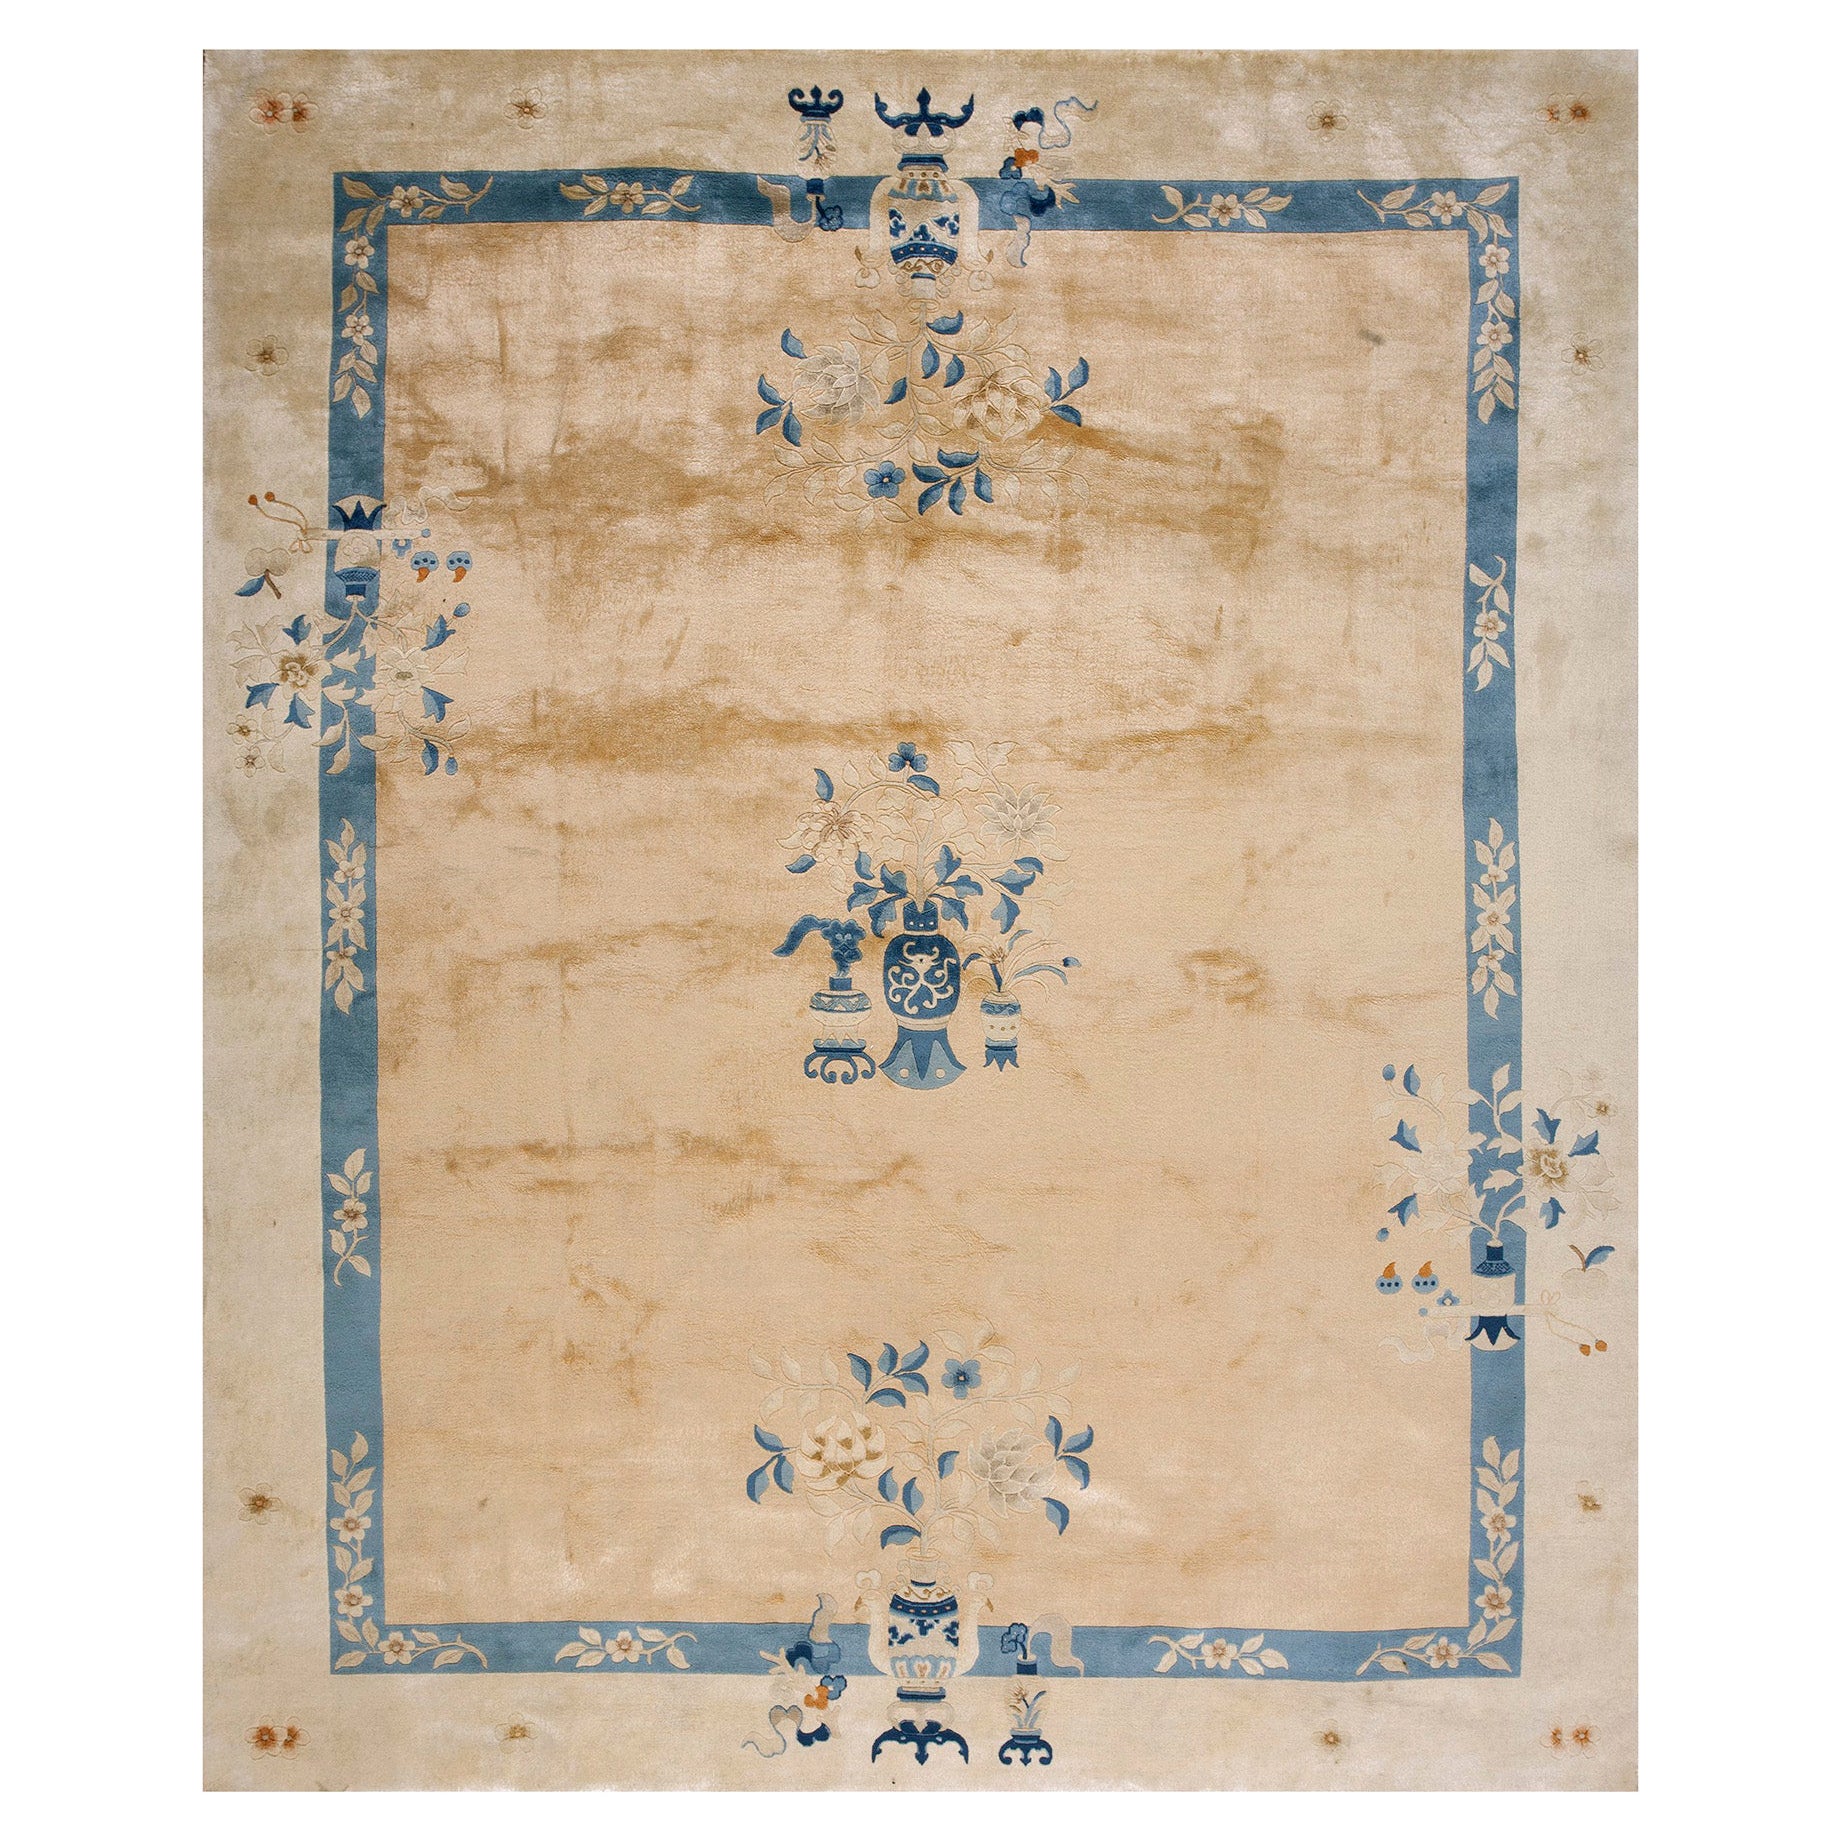 Chinesischer Peking-Teppich aus den 1980er Jahren ( 8' '' x 9' 8'' - 243 x 294 cm)